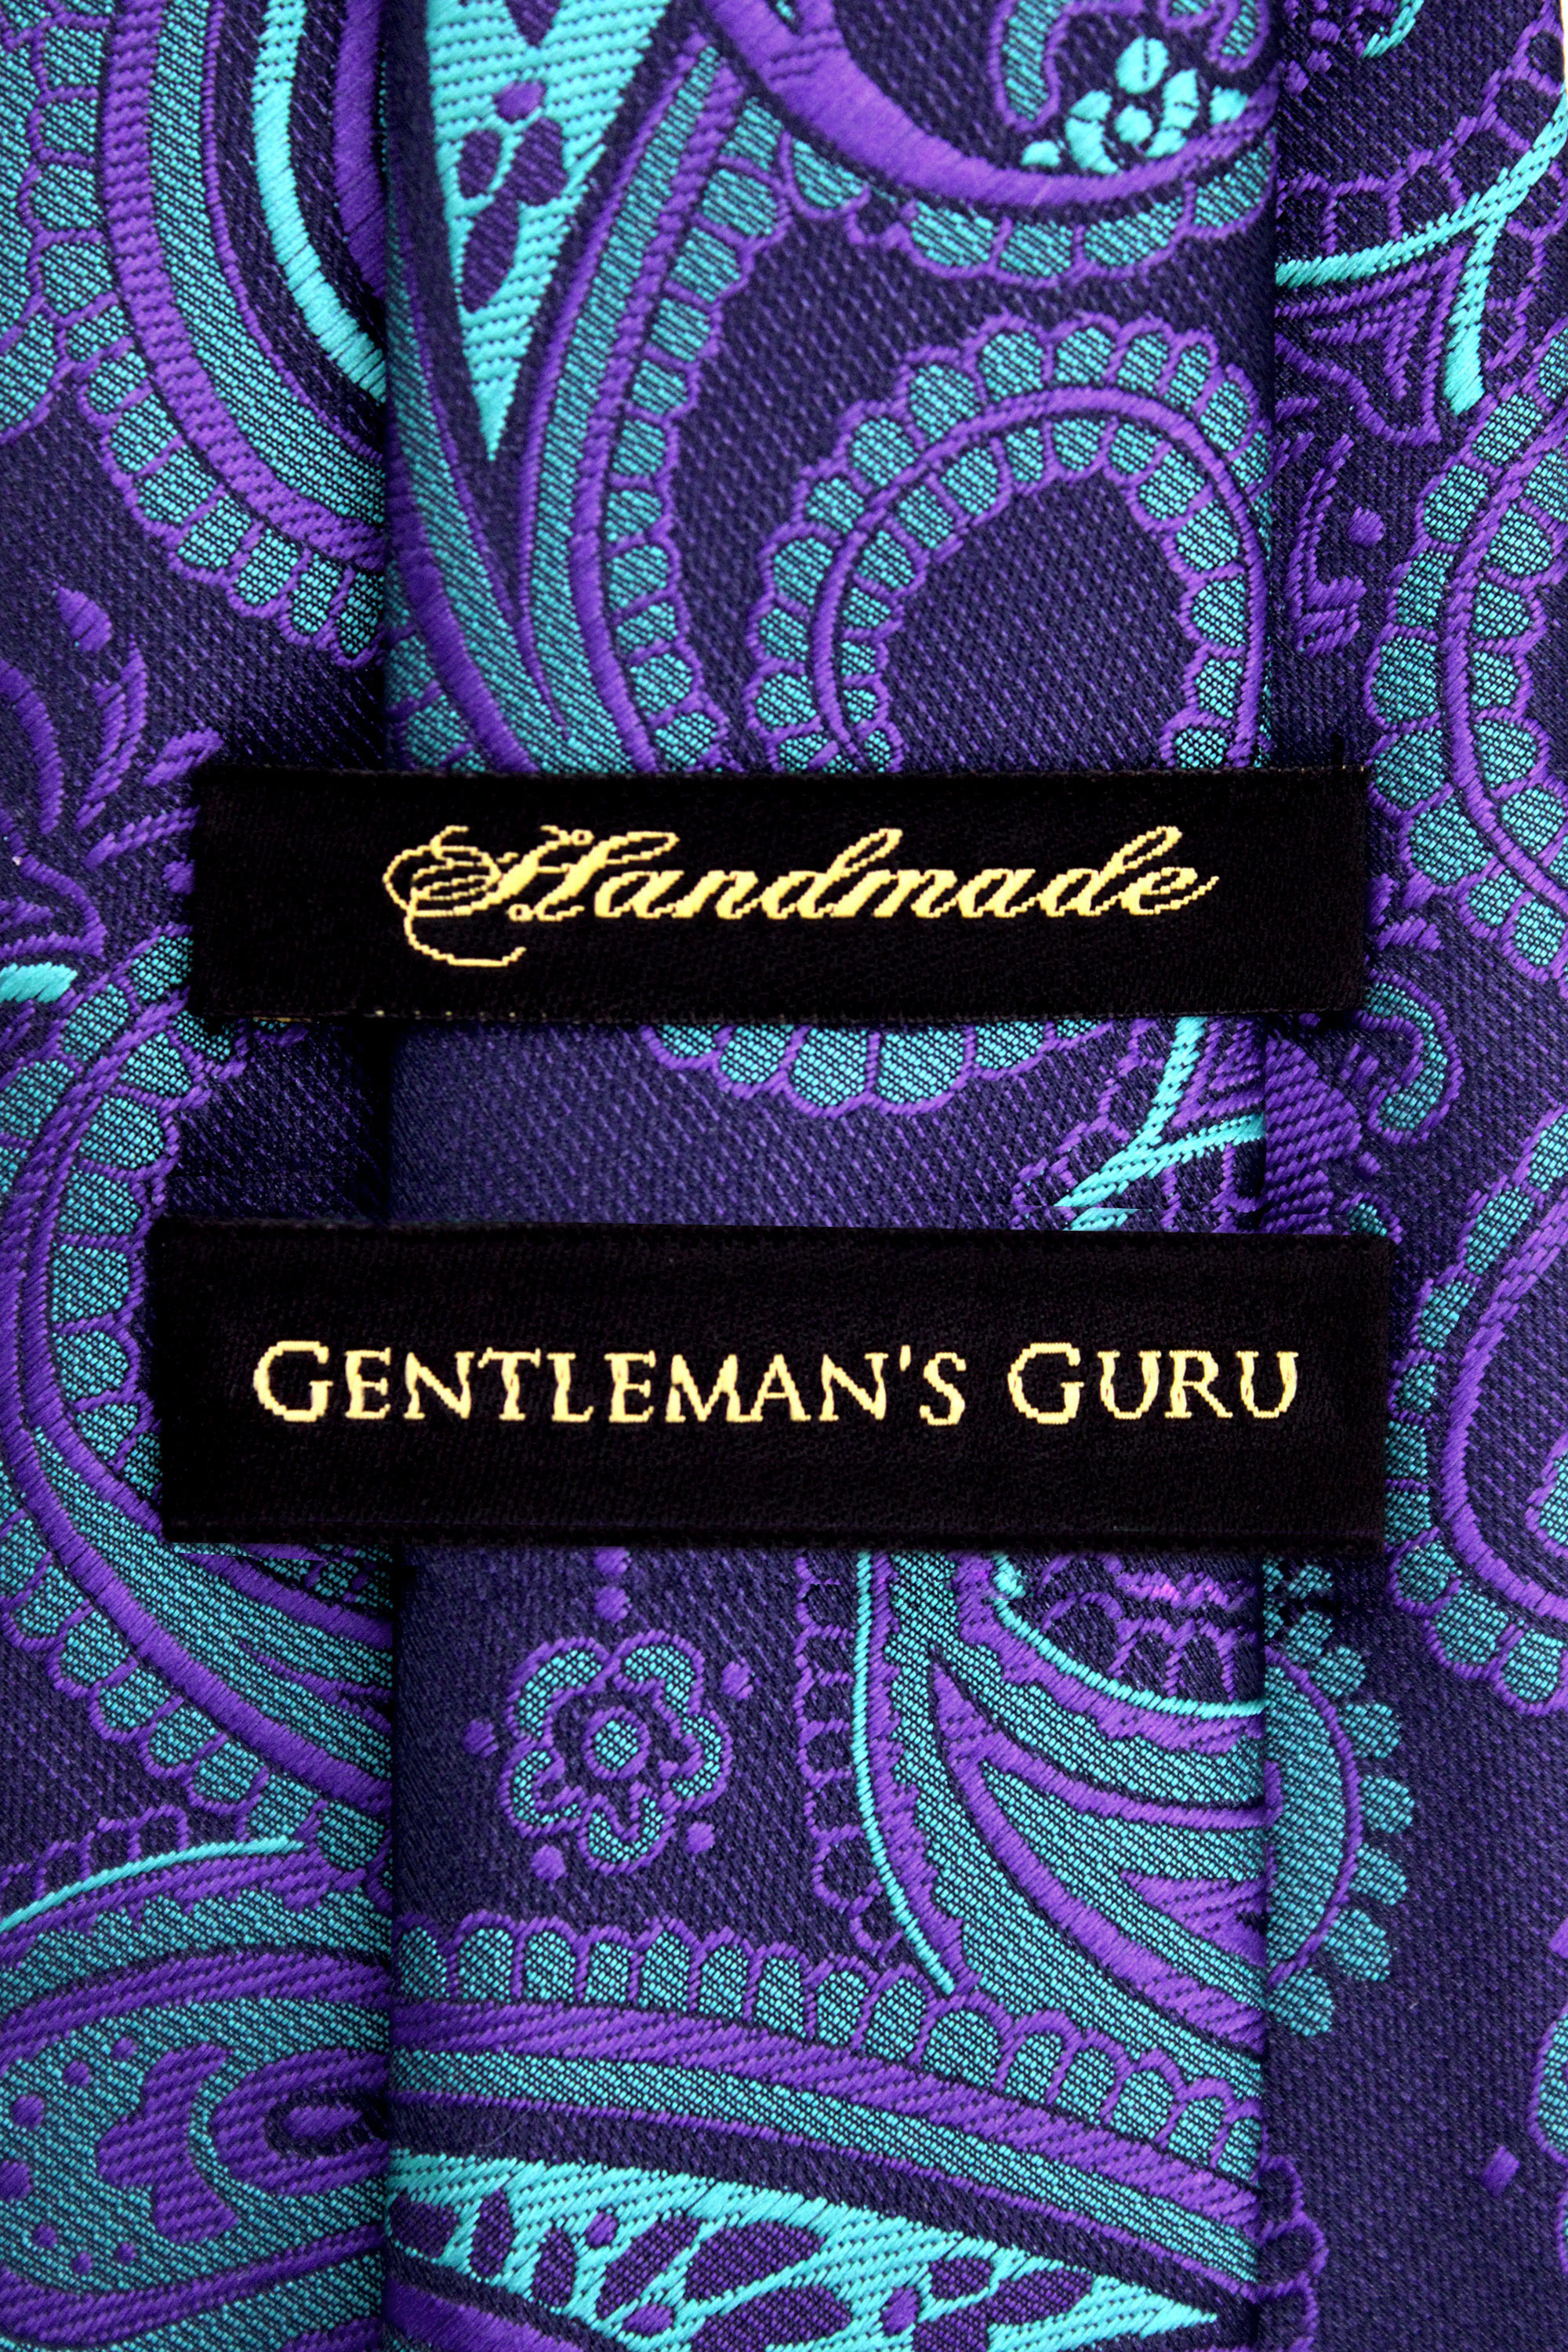 Putple-Turquoise-Paisley-Necktie-from-Gentlemansguru.com